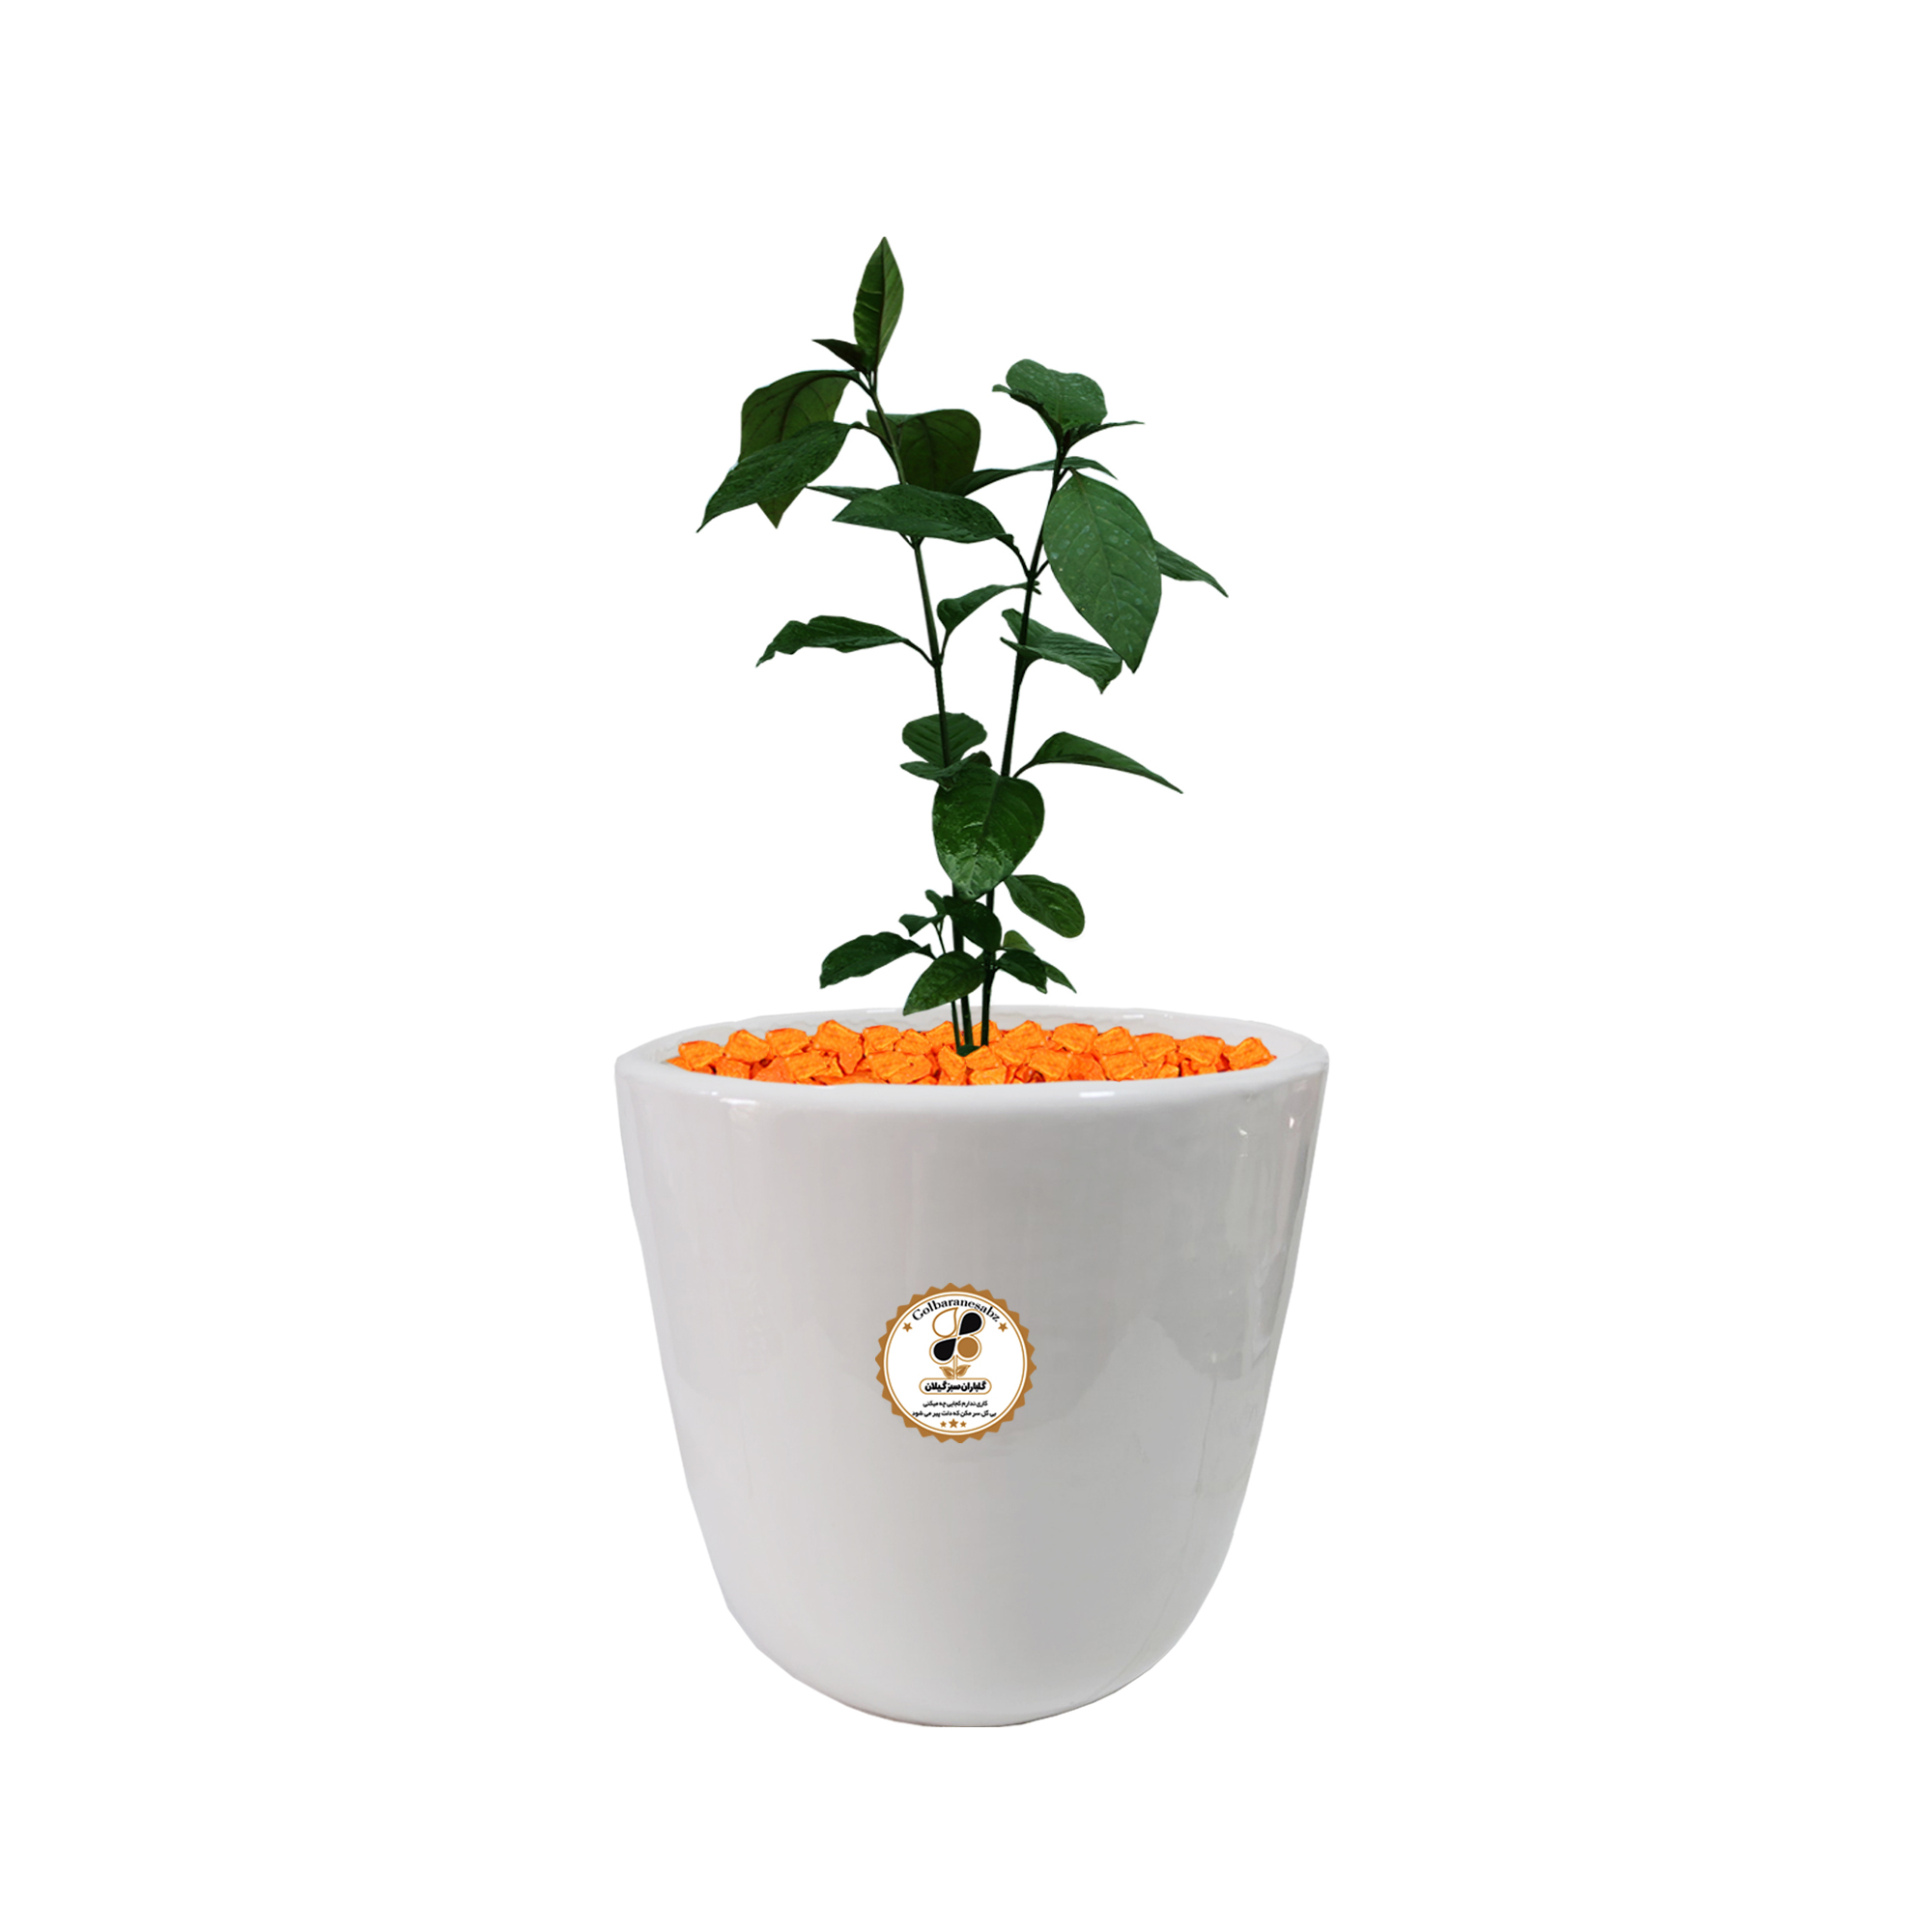 گیاه طبیعی برگ قهوه پسودا شرکت گلباران سبز گیلان مدل BGHP-M